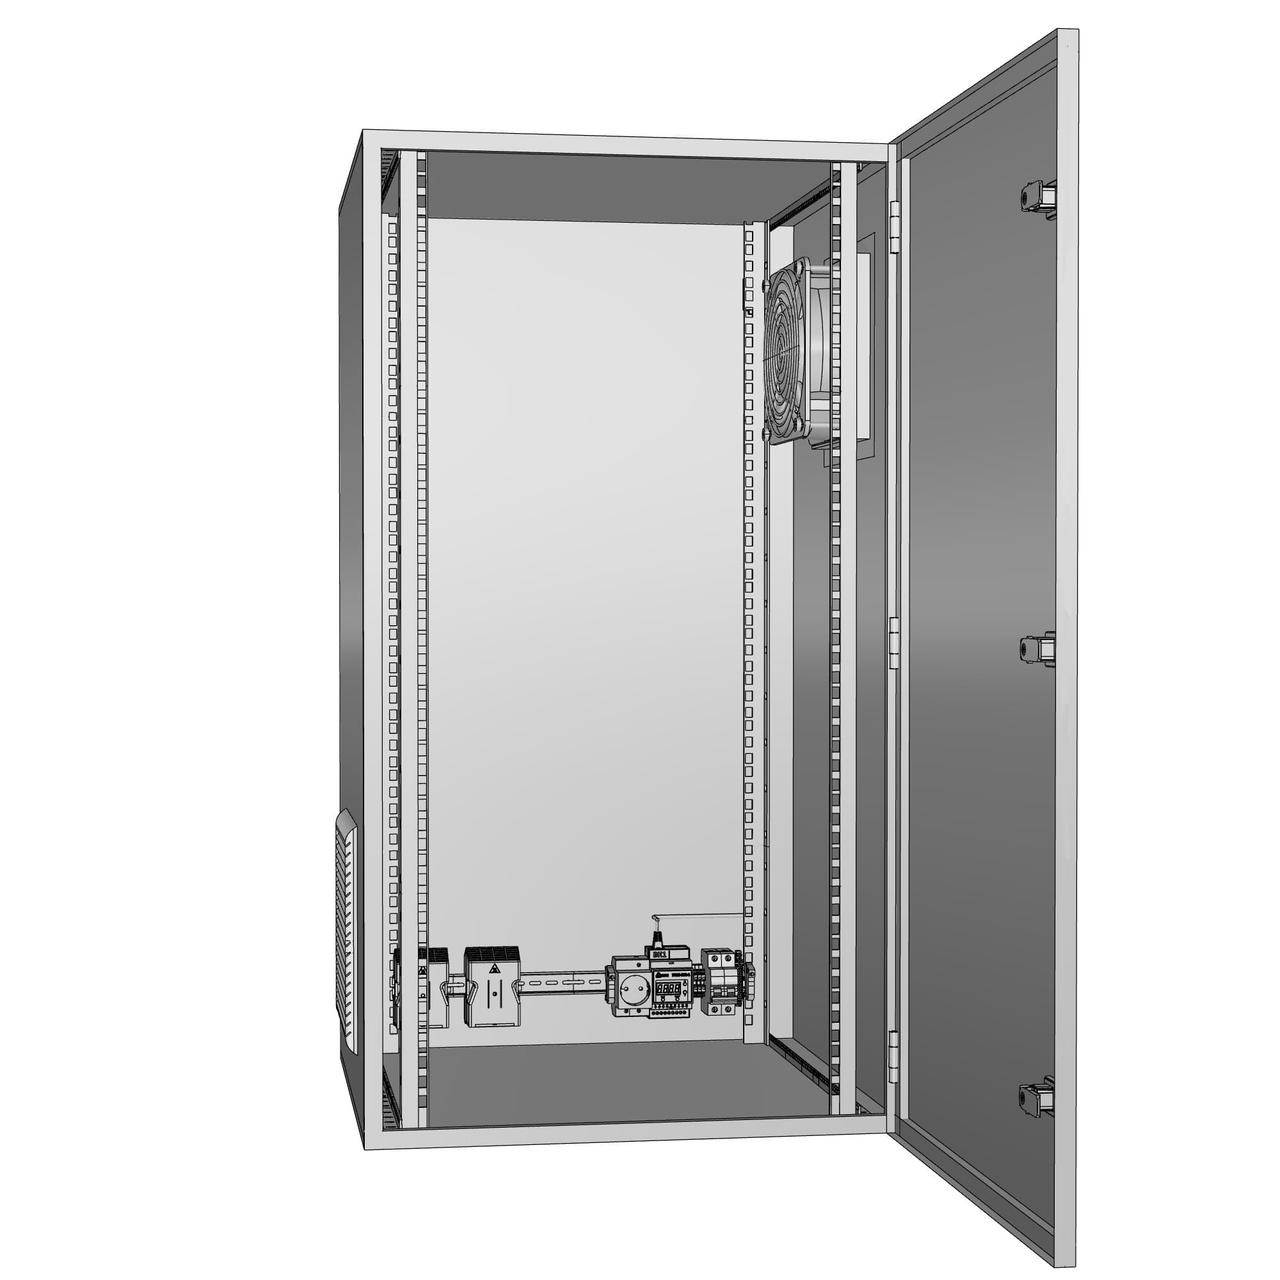 Шкаф климатический утеплённый с вентиляцией ЩКу- В- 4 - 700×500×250 (В×Ш×Г) IP65